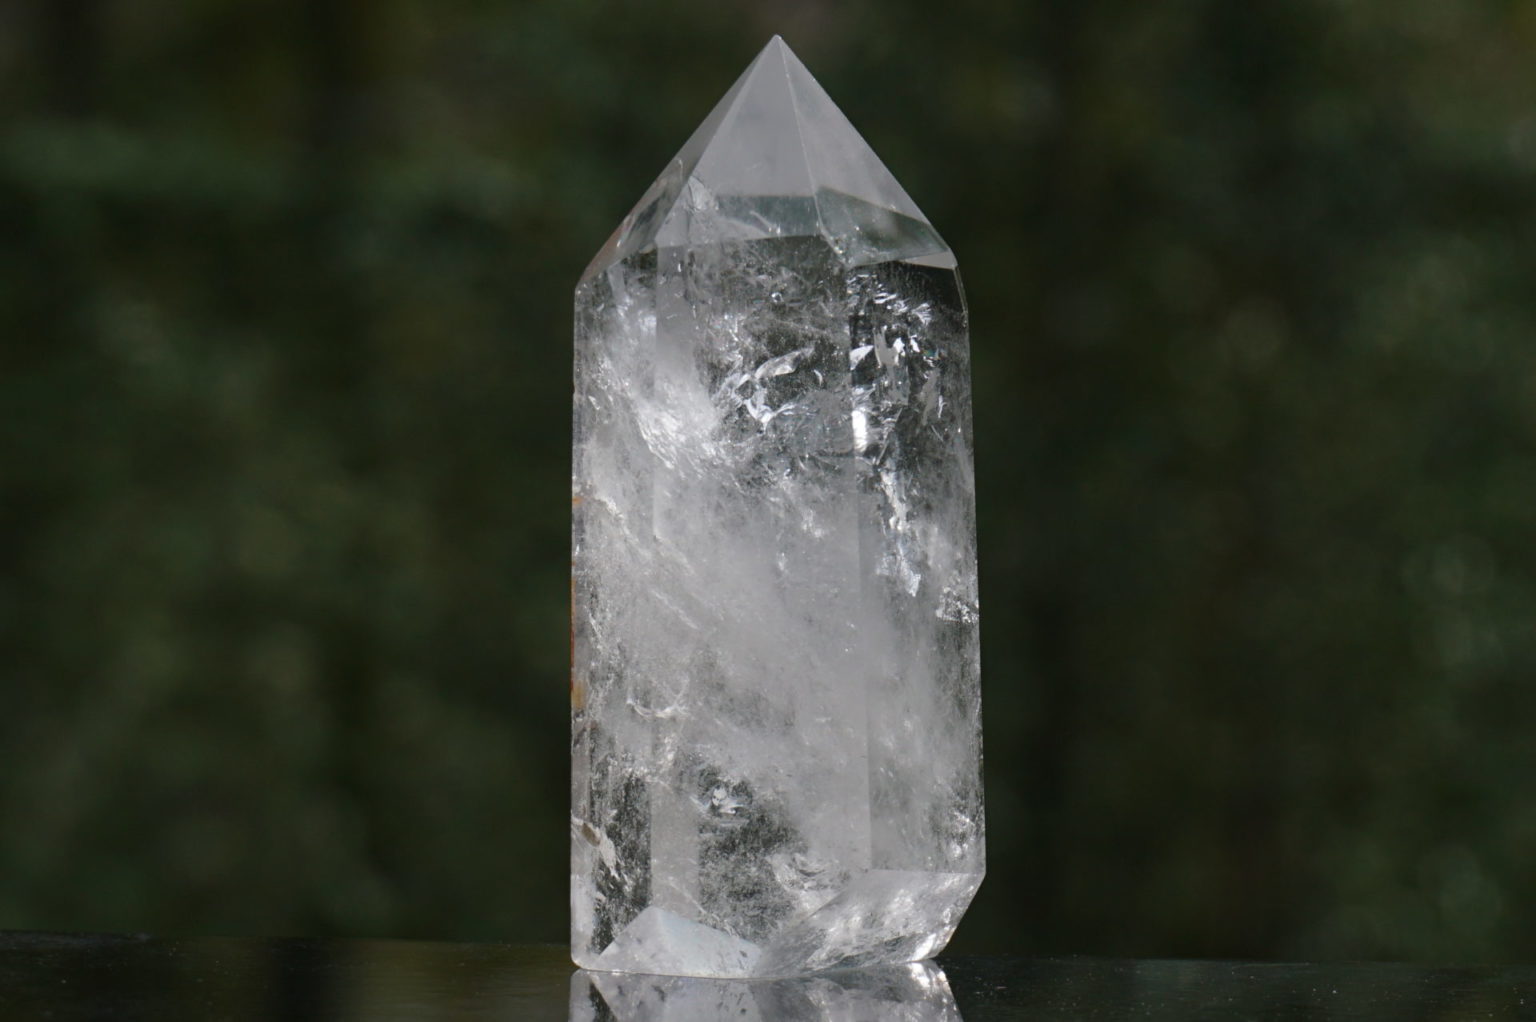 brazil-quartz-polish-point04